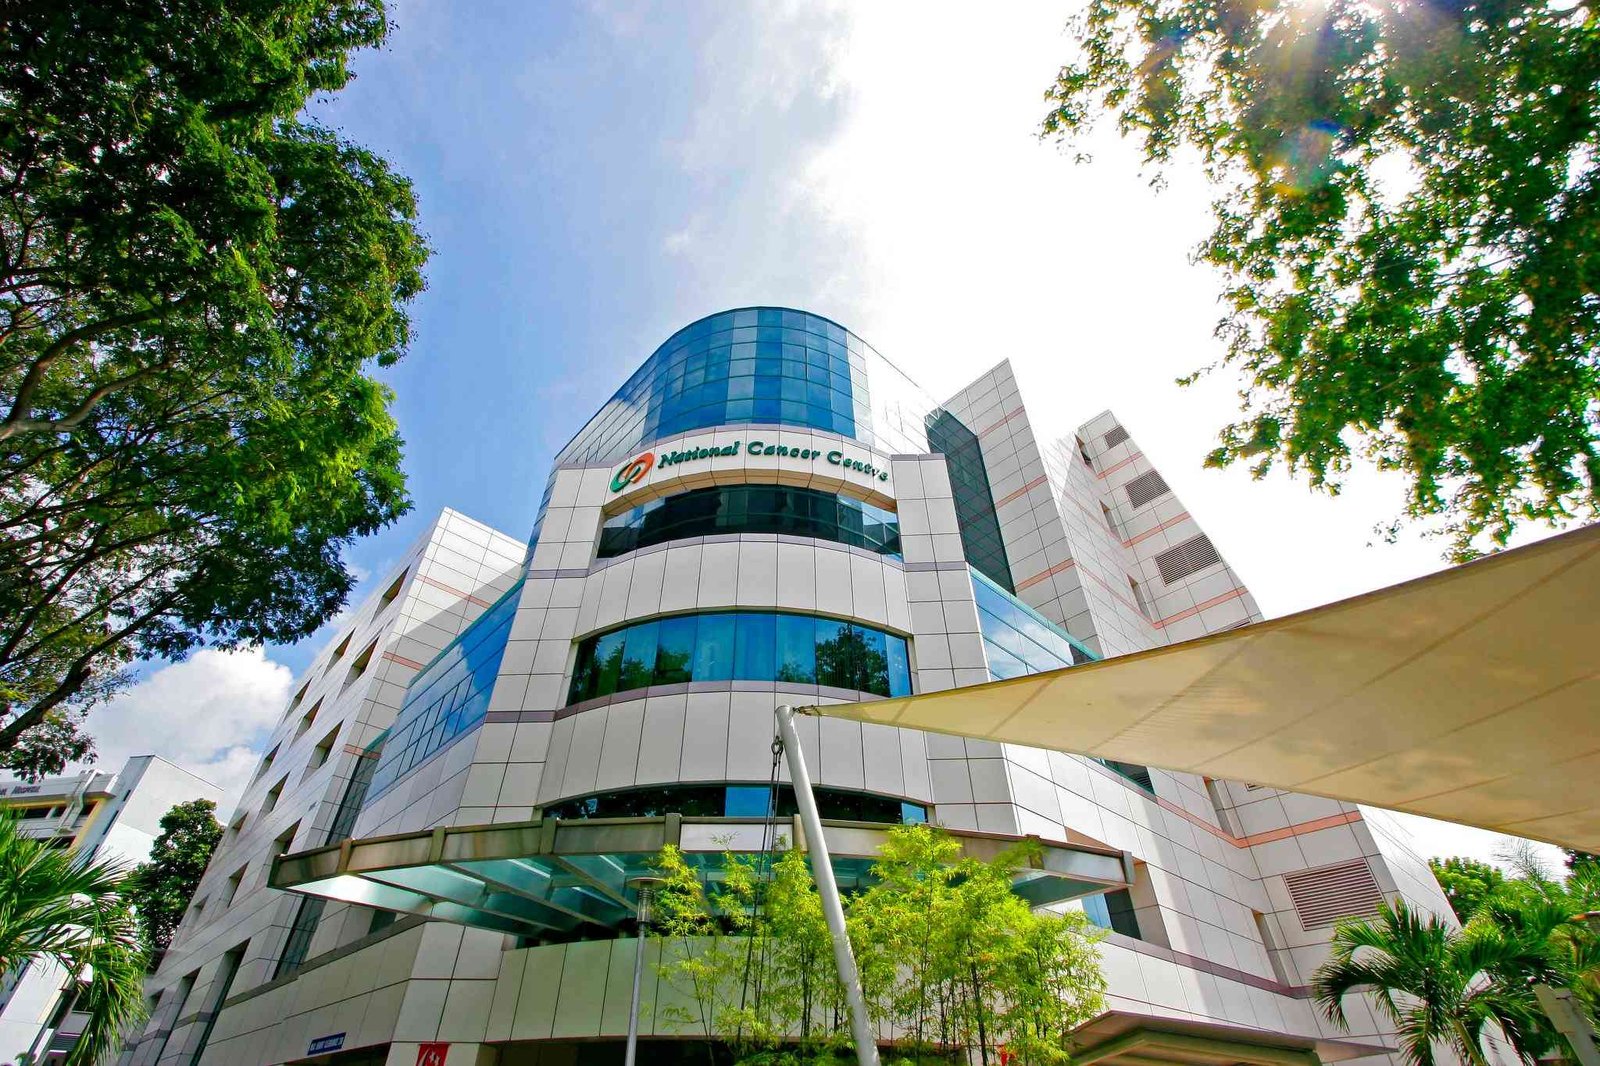 national cancer centre singapore (nccs) 61 新加坡国立癌症中心